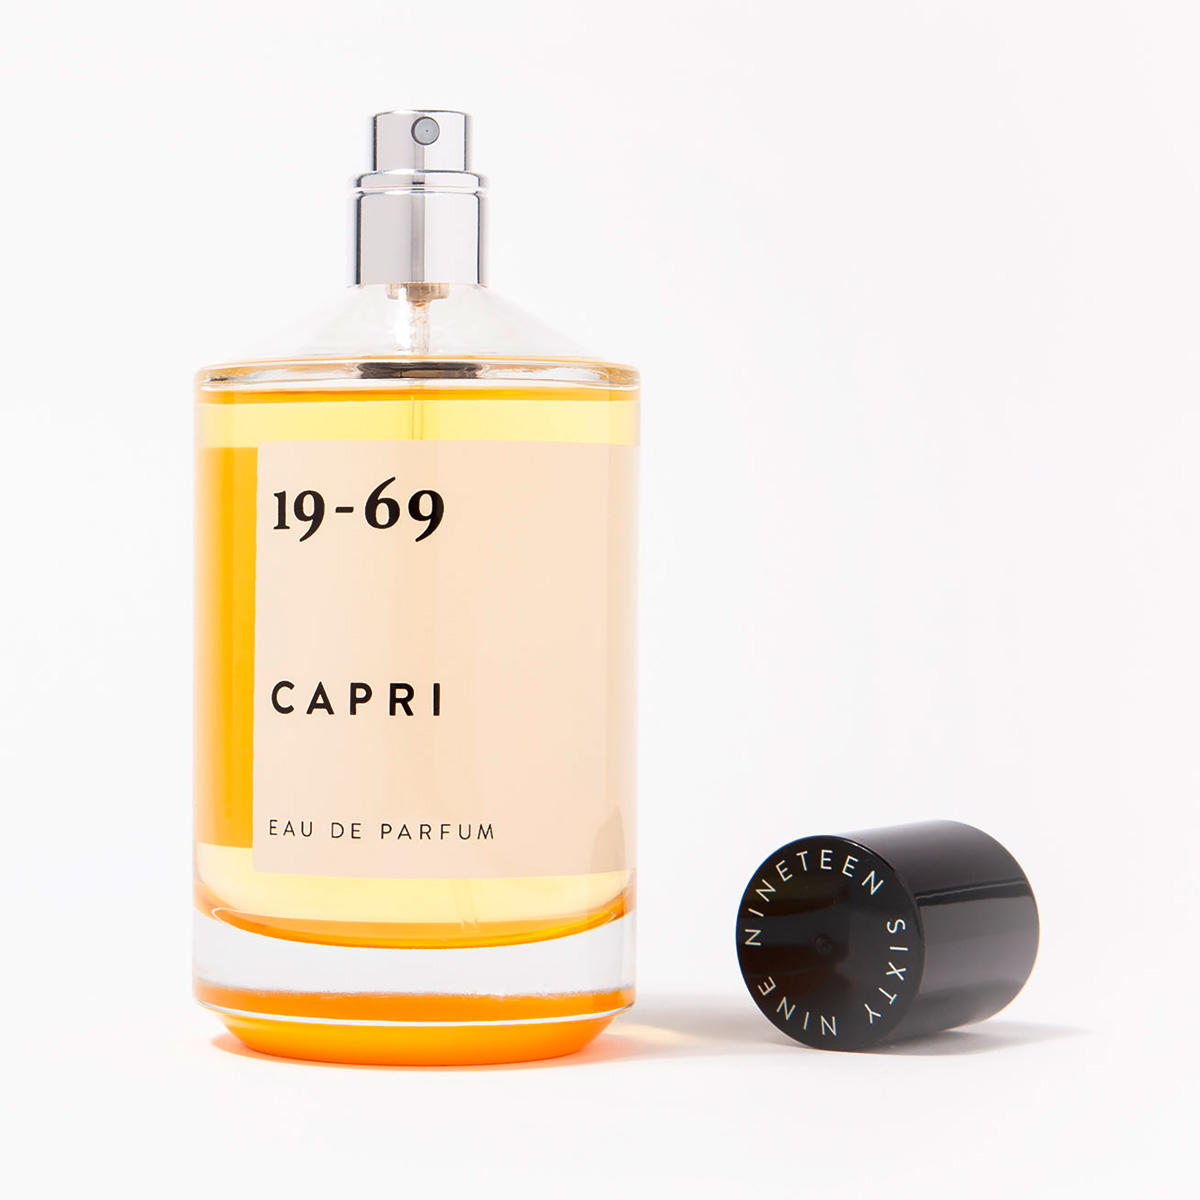 19-69 Capri Eau de Parfum 100 ml - 3